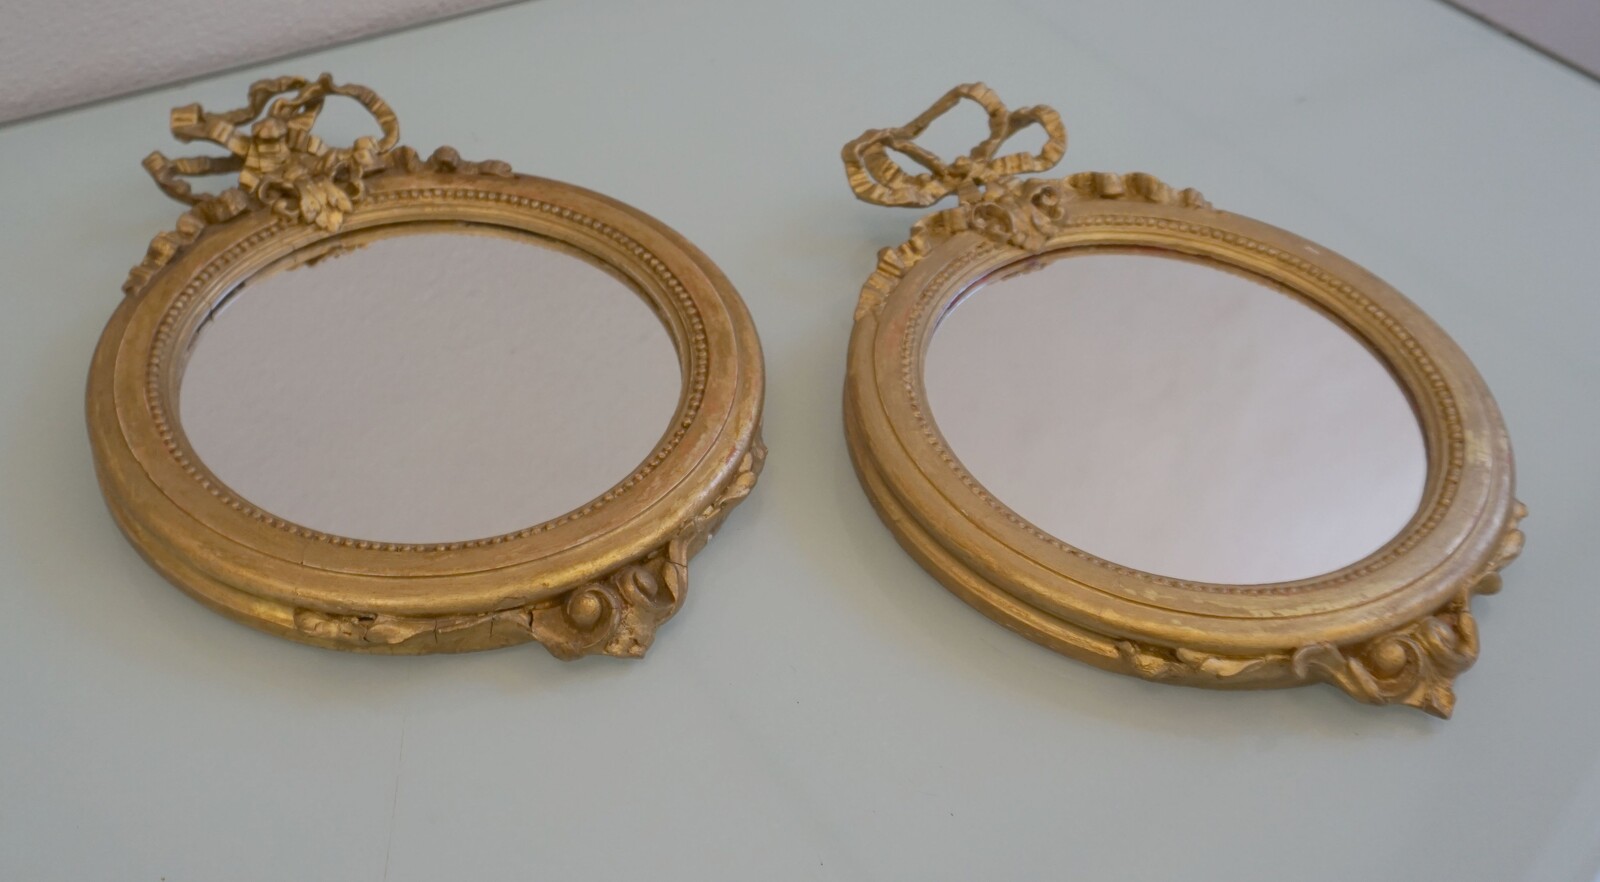 Pair of mirrorsSOLD